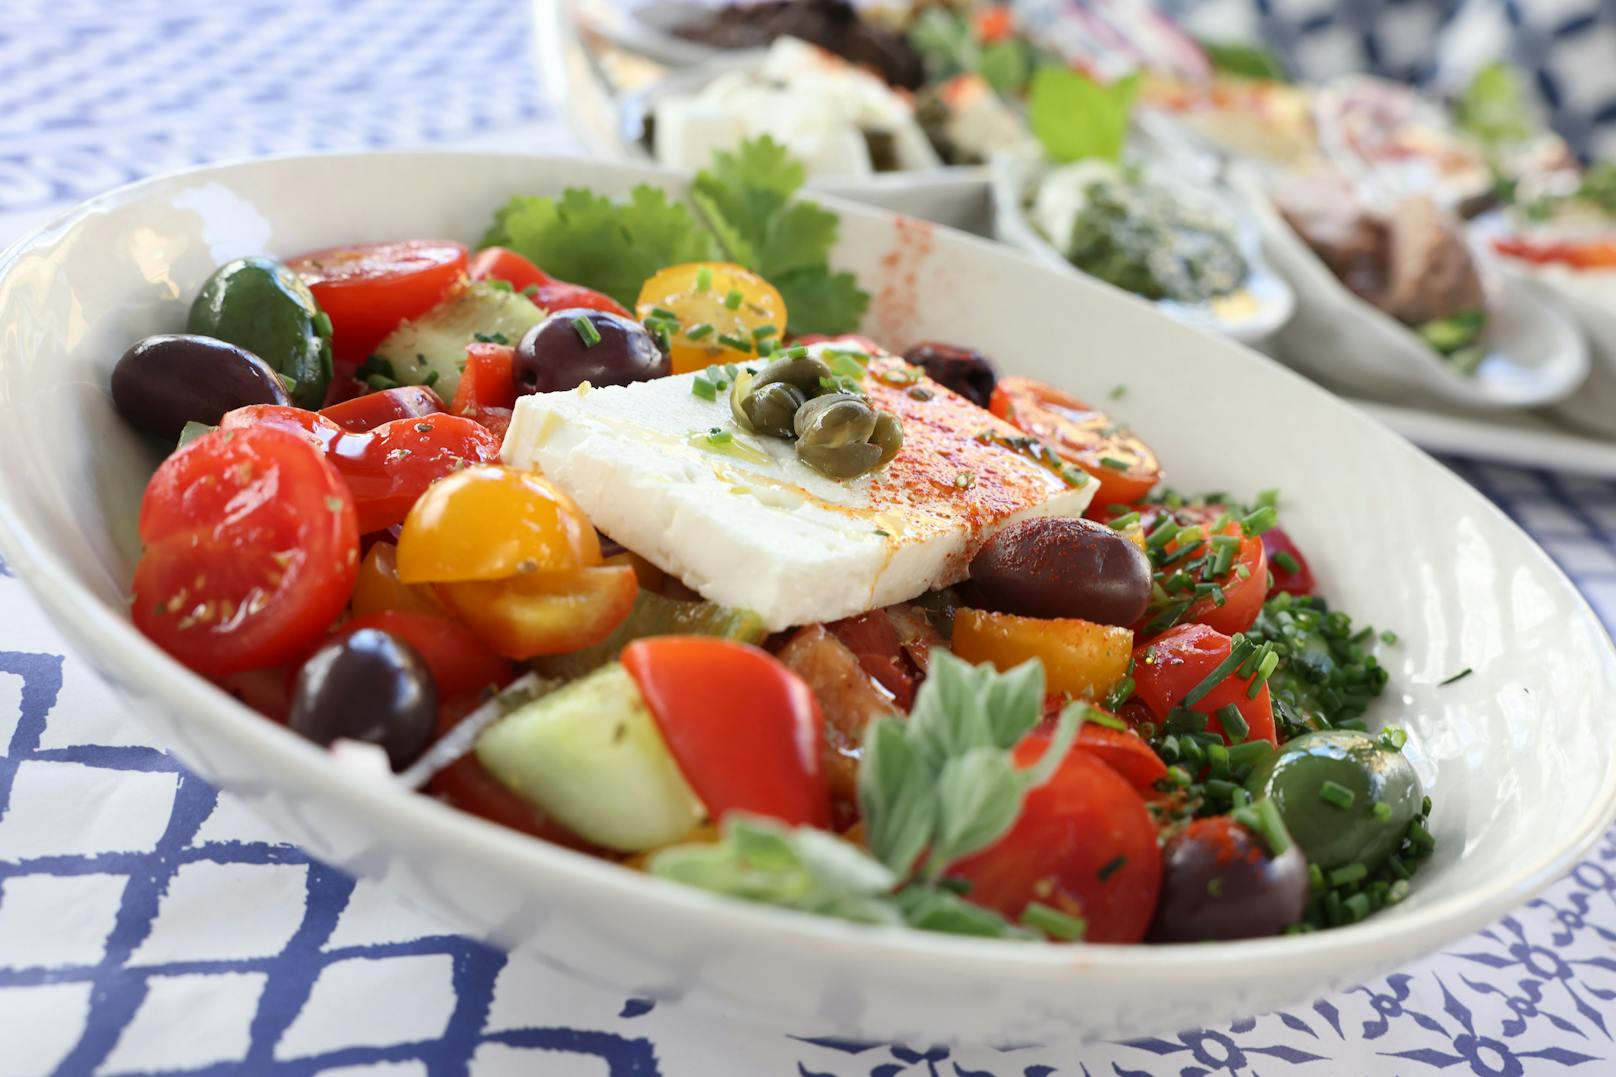 Trotz modernem Anspruch gibt es Klassiker wie griechischen Salat (11 €) oder Moussaka (15 €).